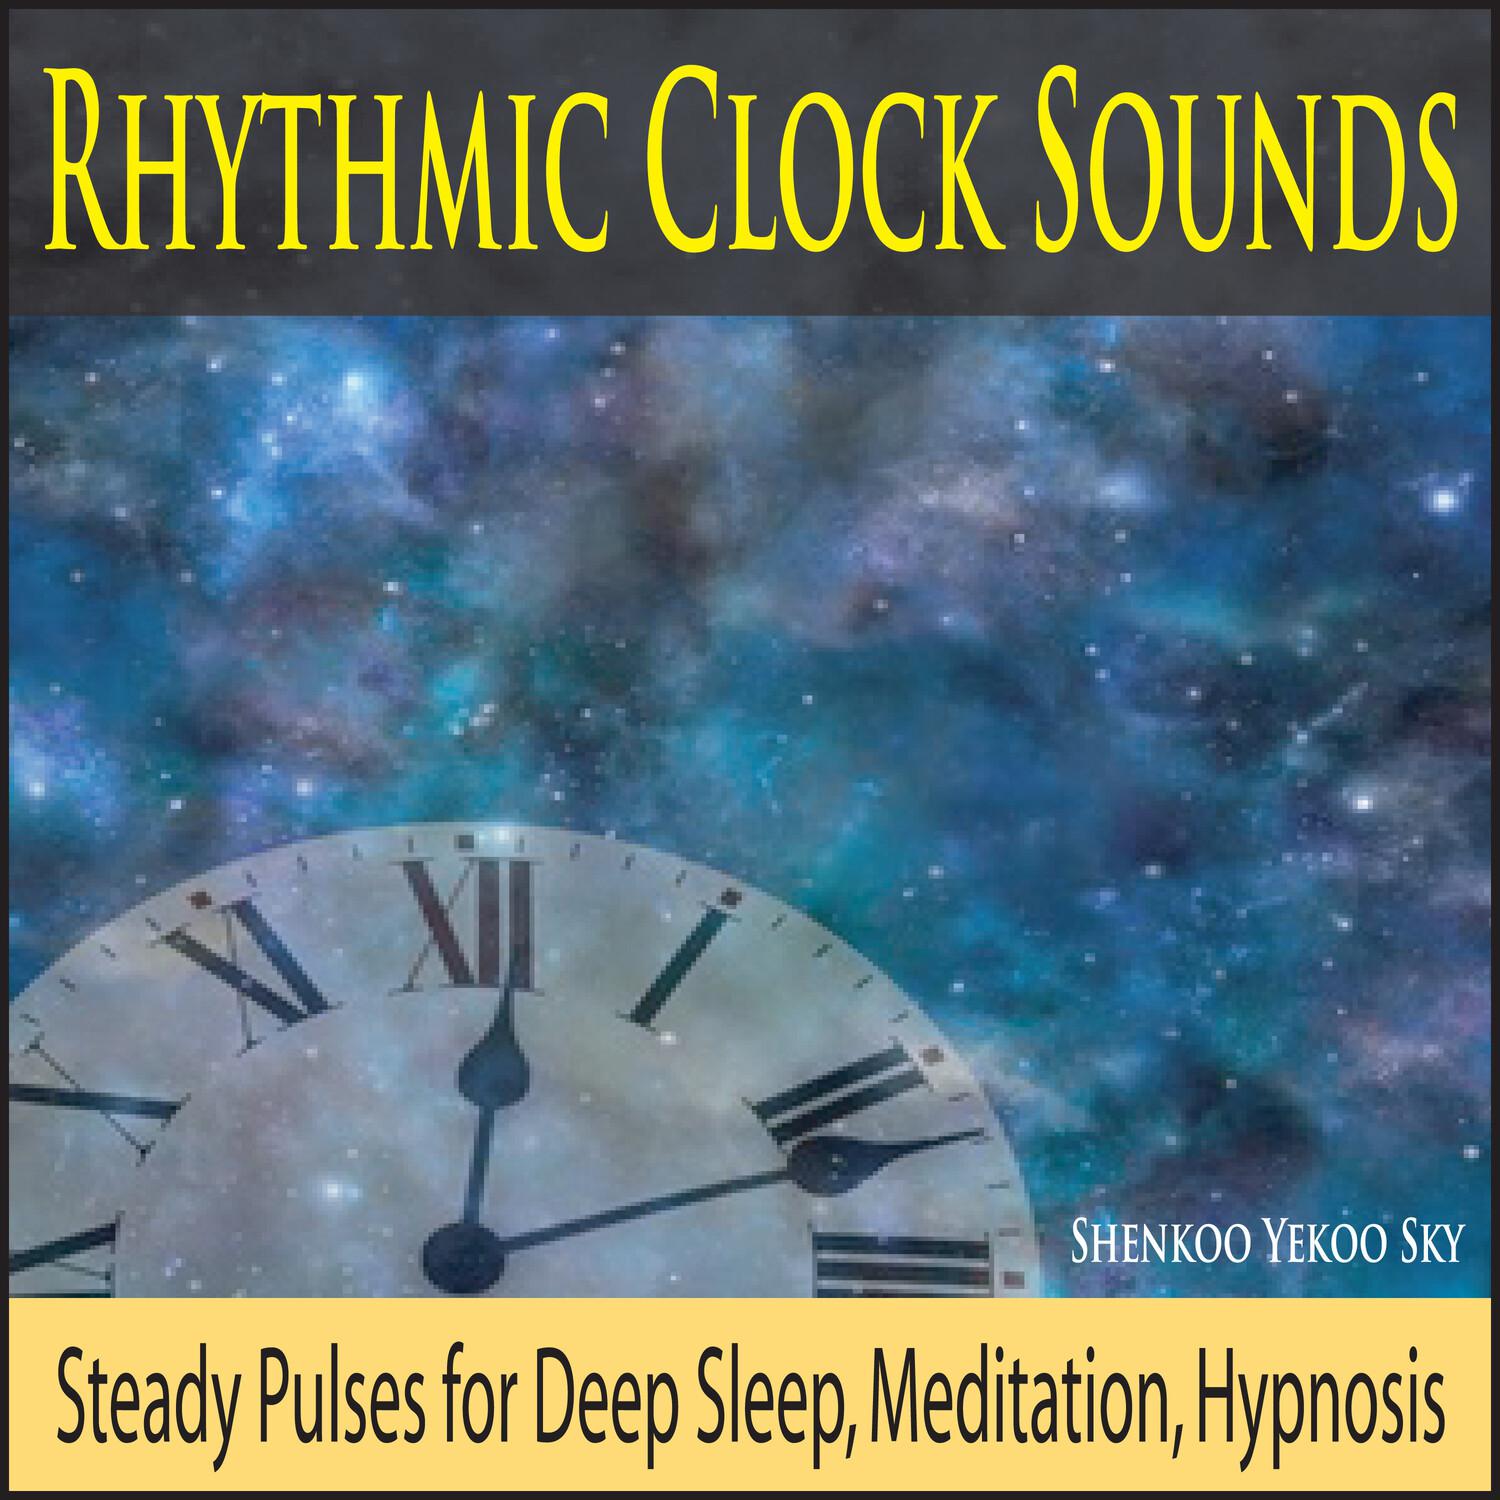 Rhythmic Clock Sounds: Steady Pulses for Deep Sleep, Meditation, Hypnosis